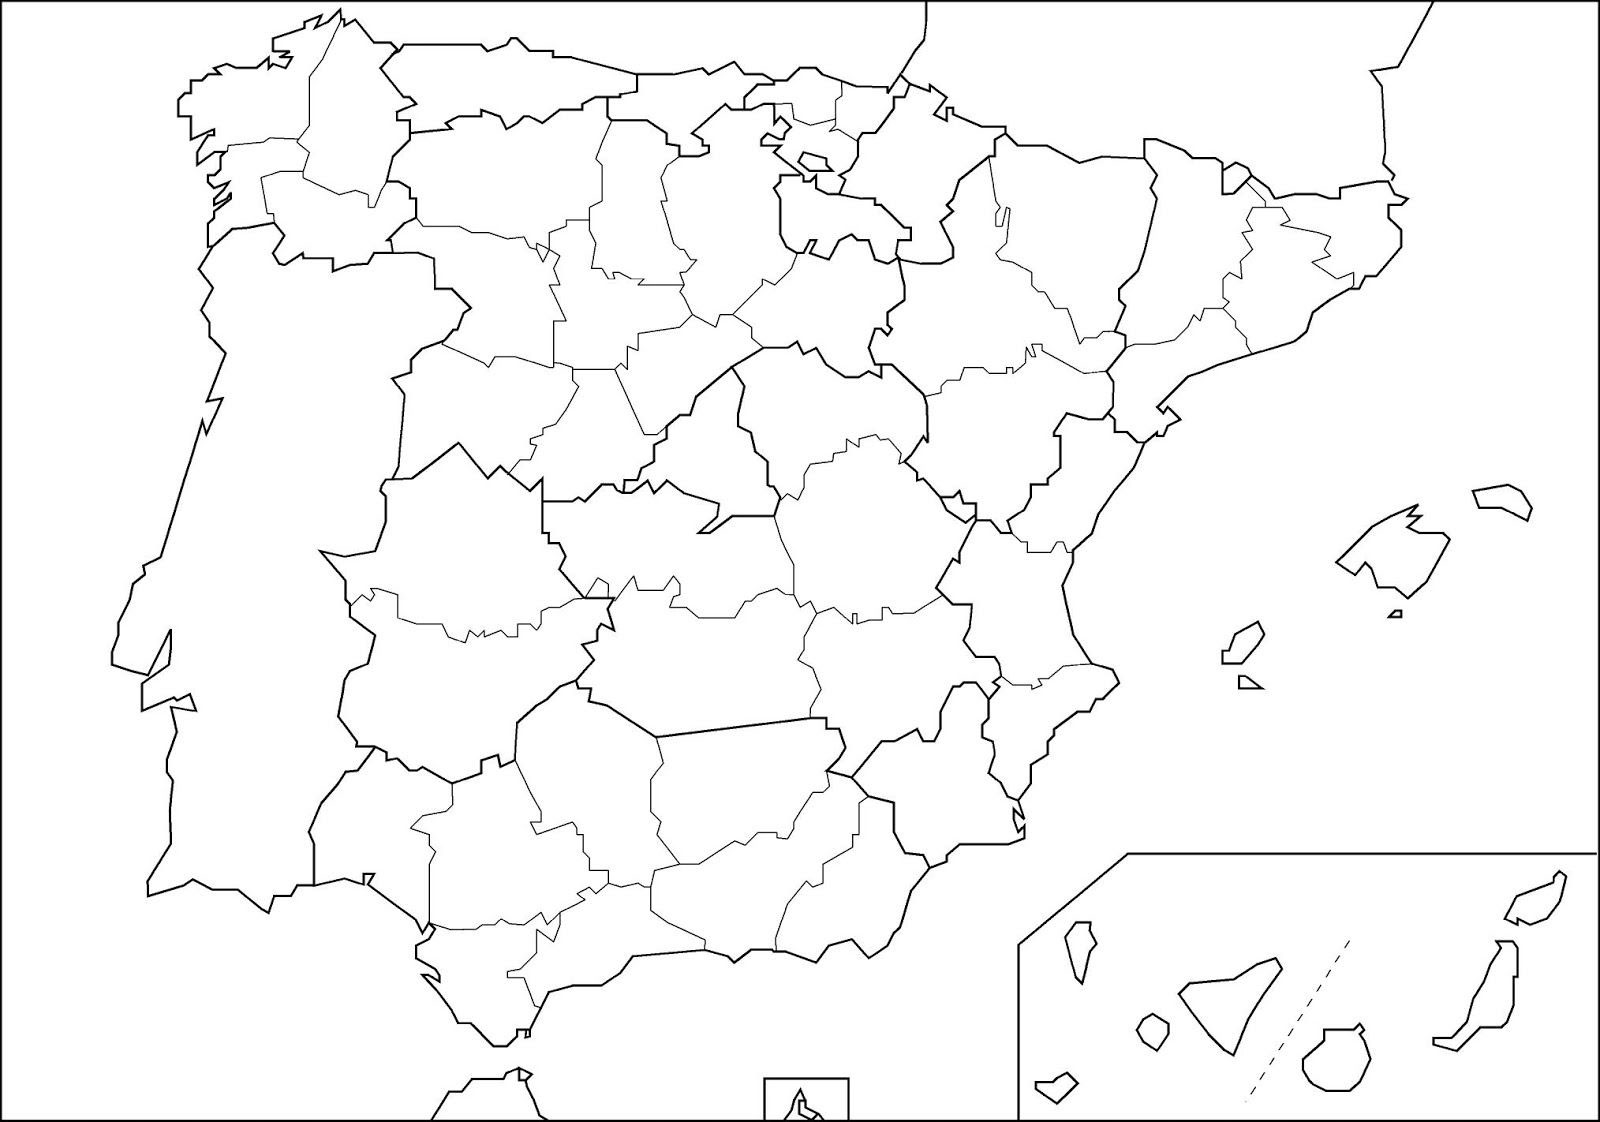 Servicio de Bunker de Refugio en todas las provincias de España